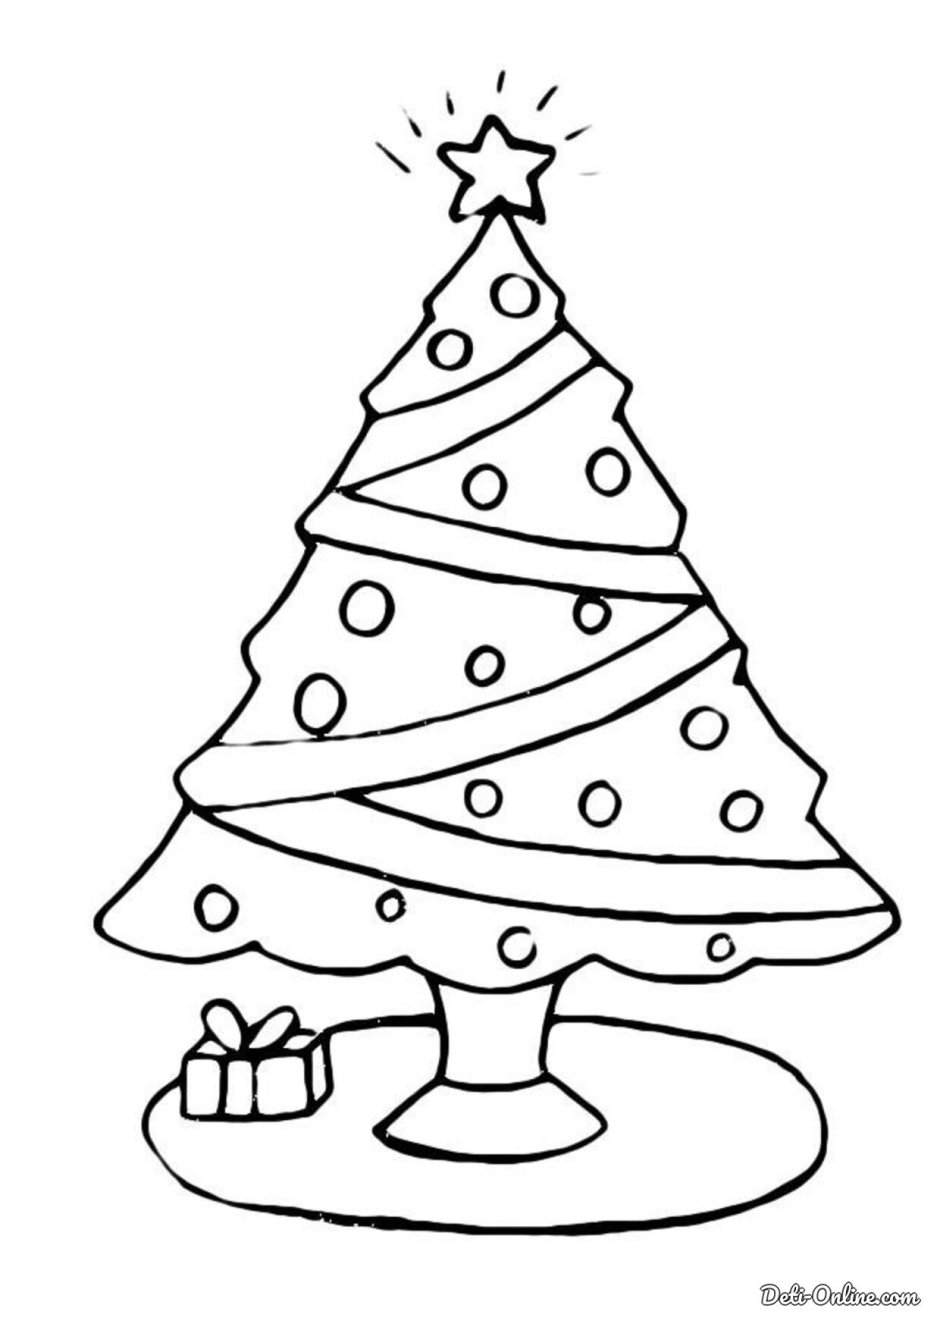 Раскраска елочка с подарками для детей